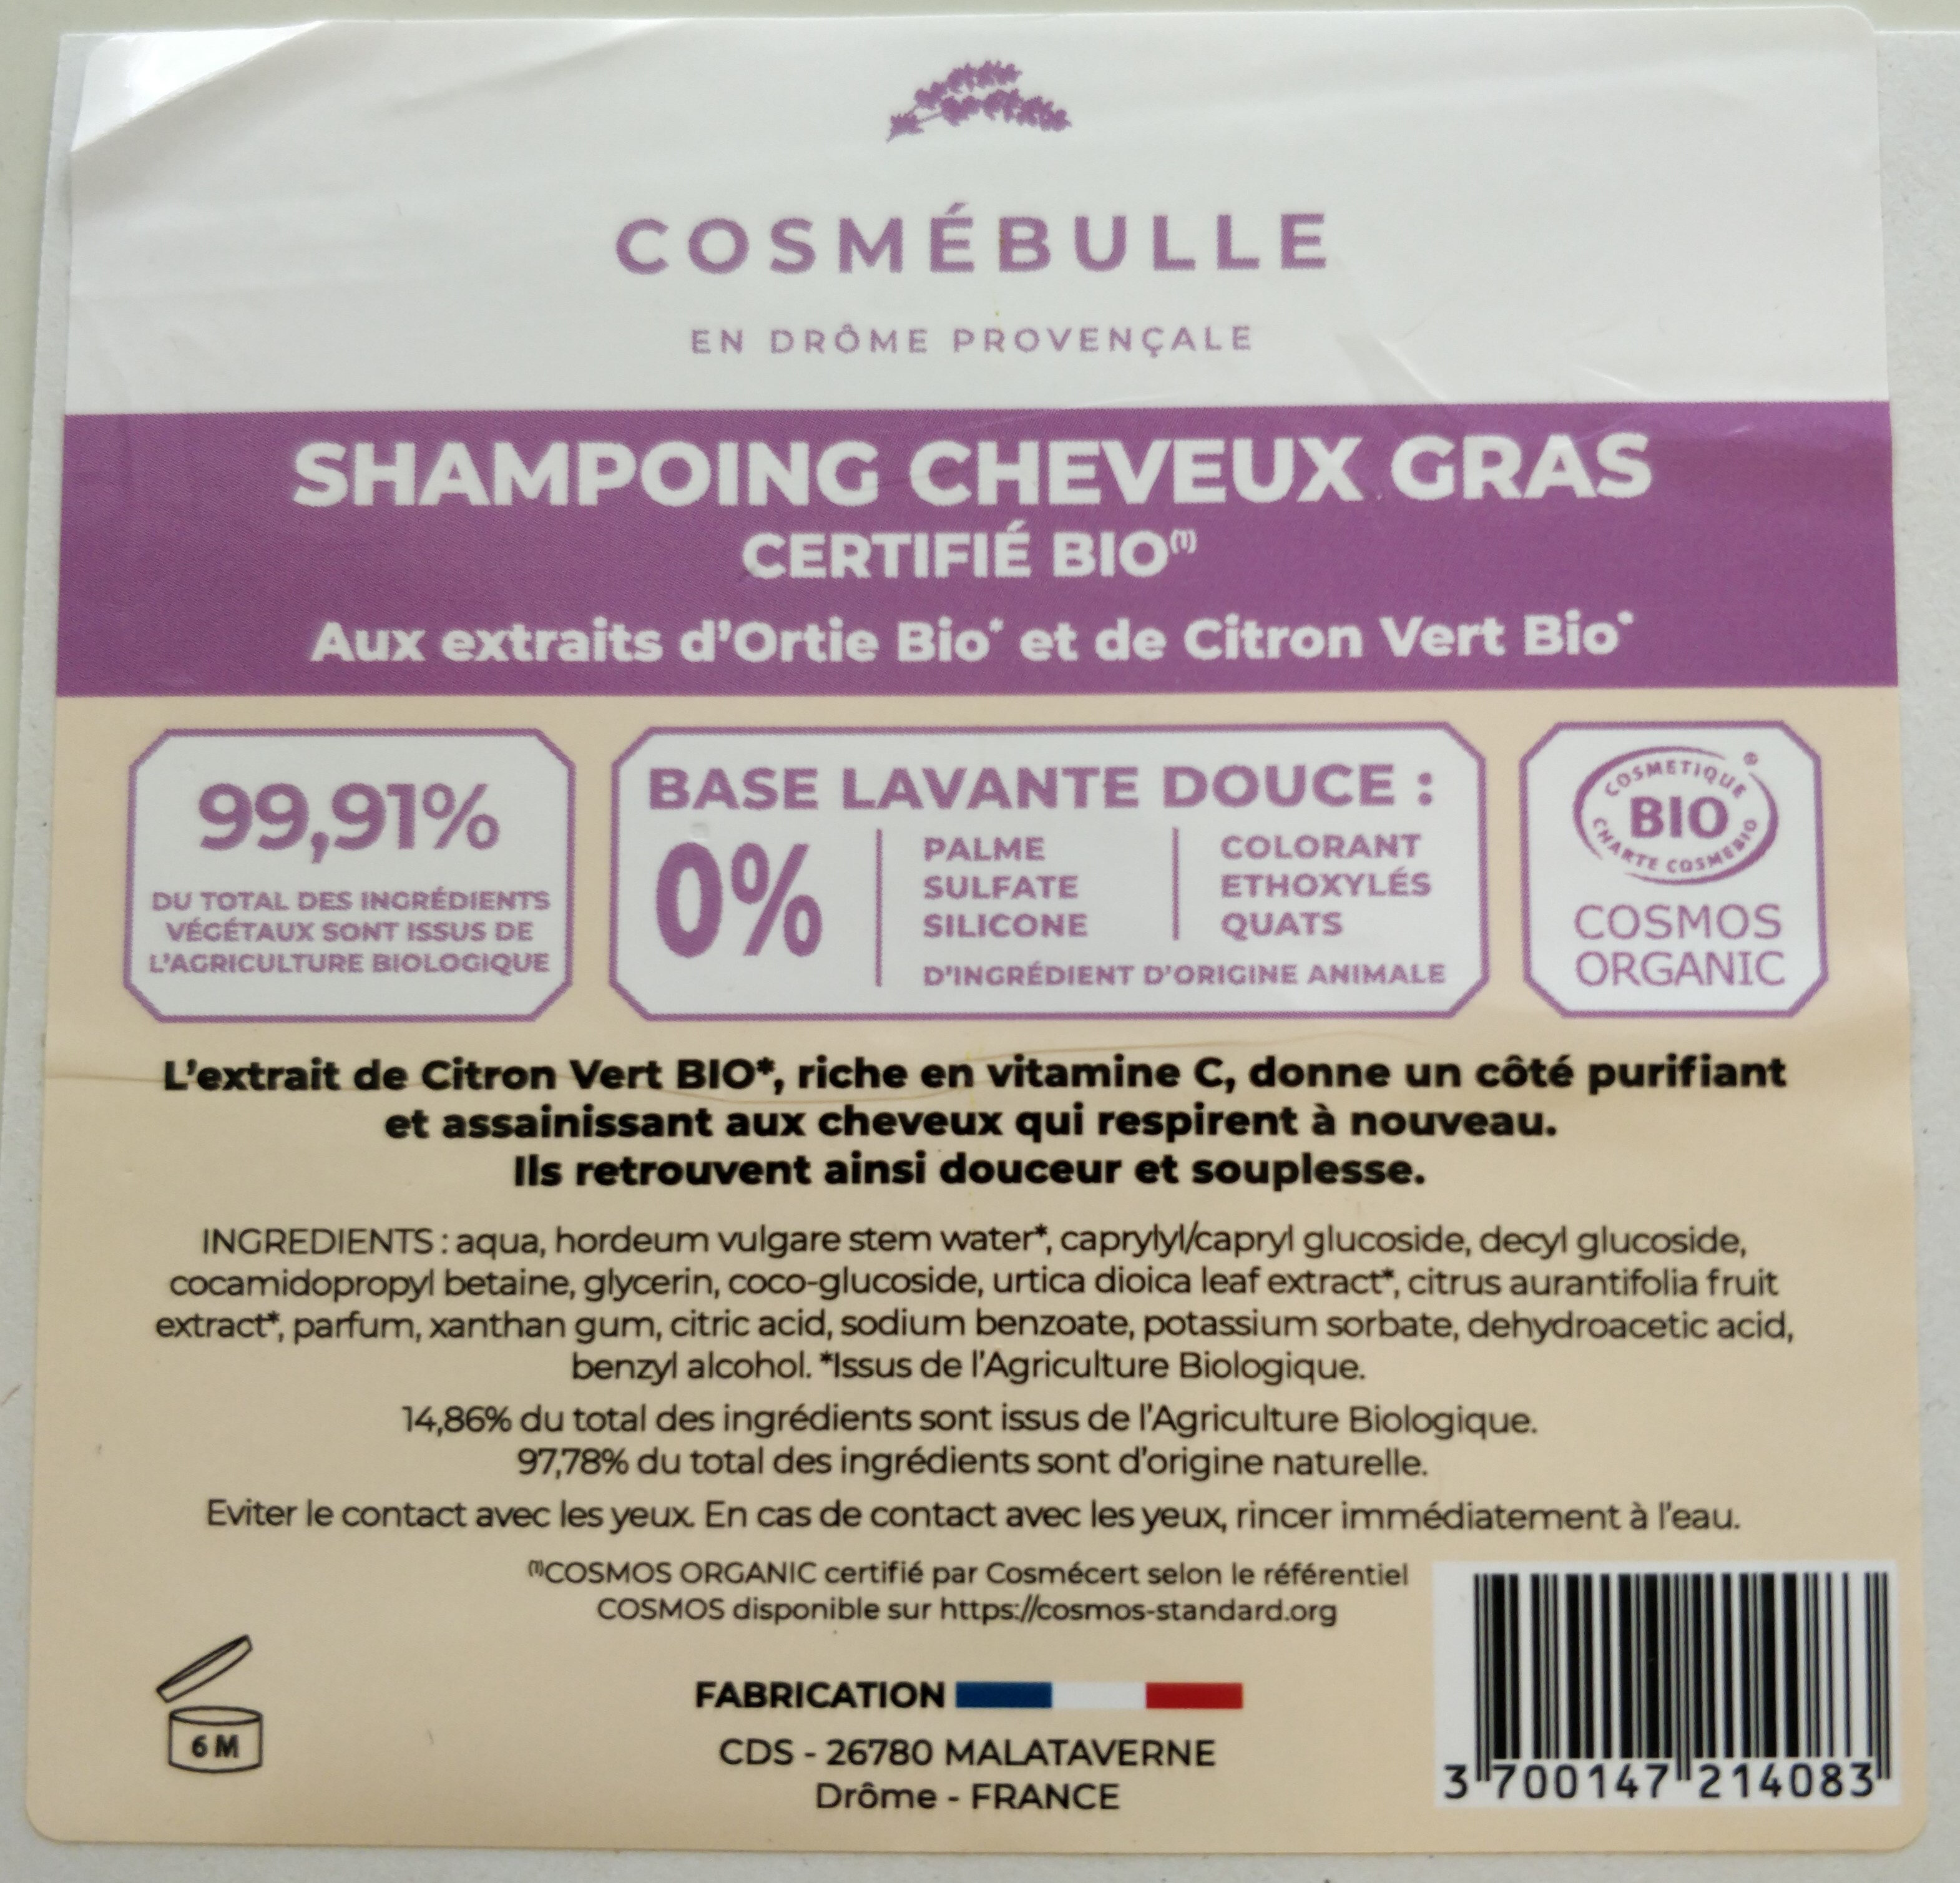 Shampoing cheveux gras - Produto - fr